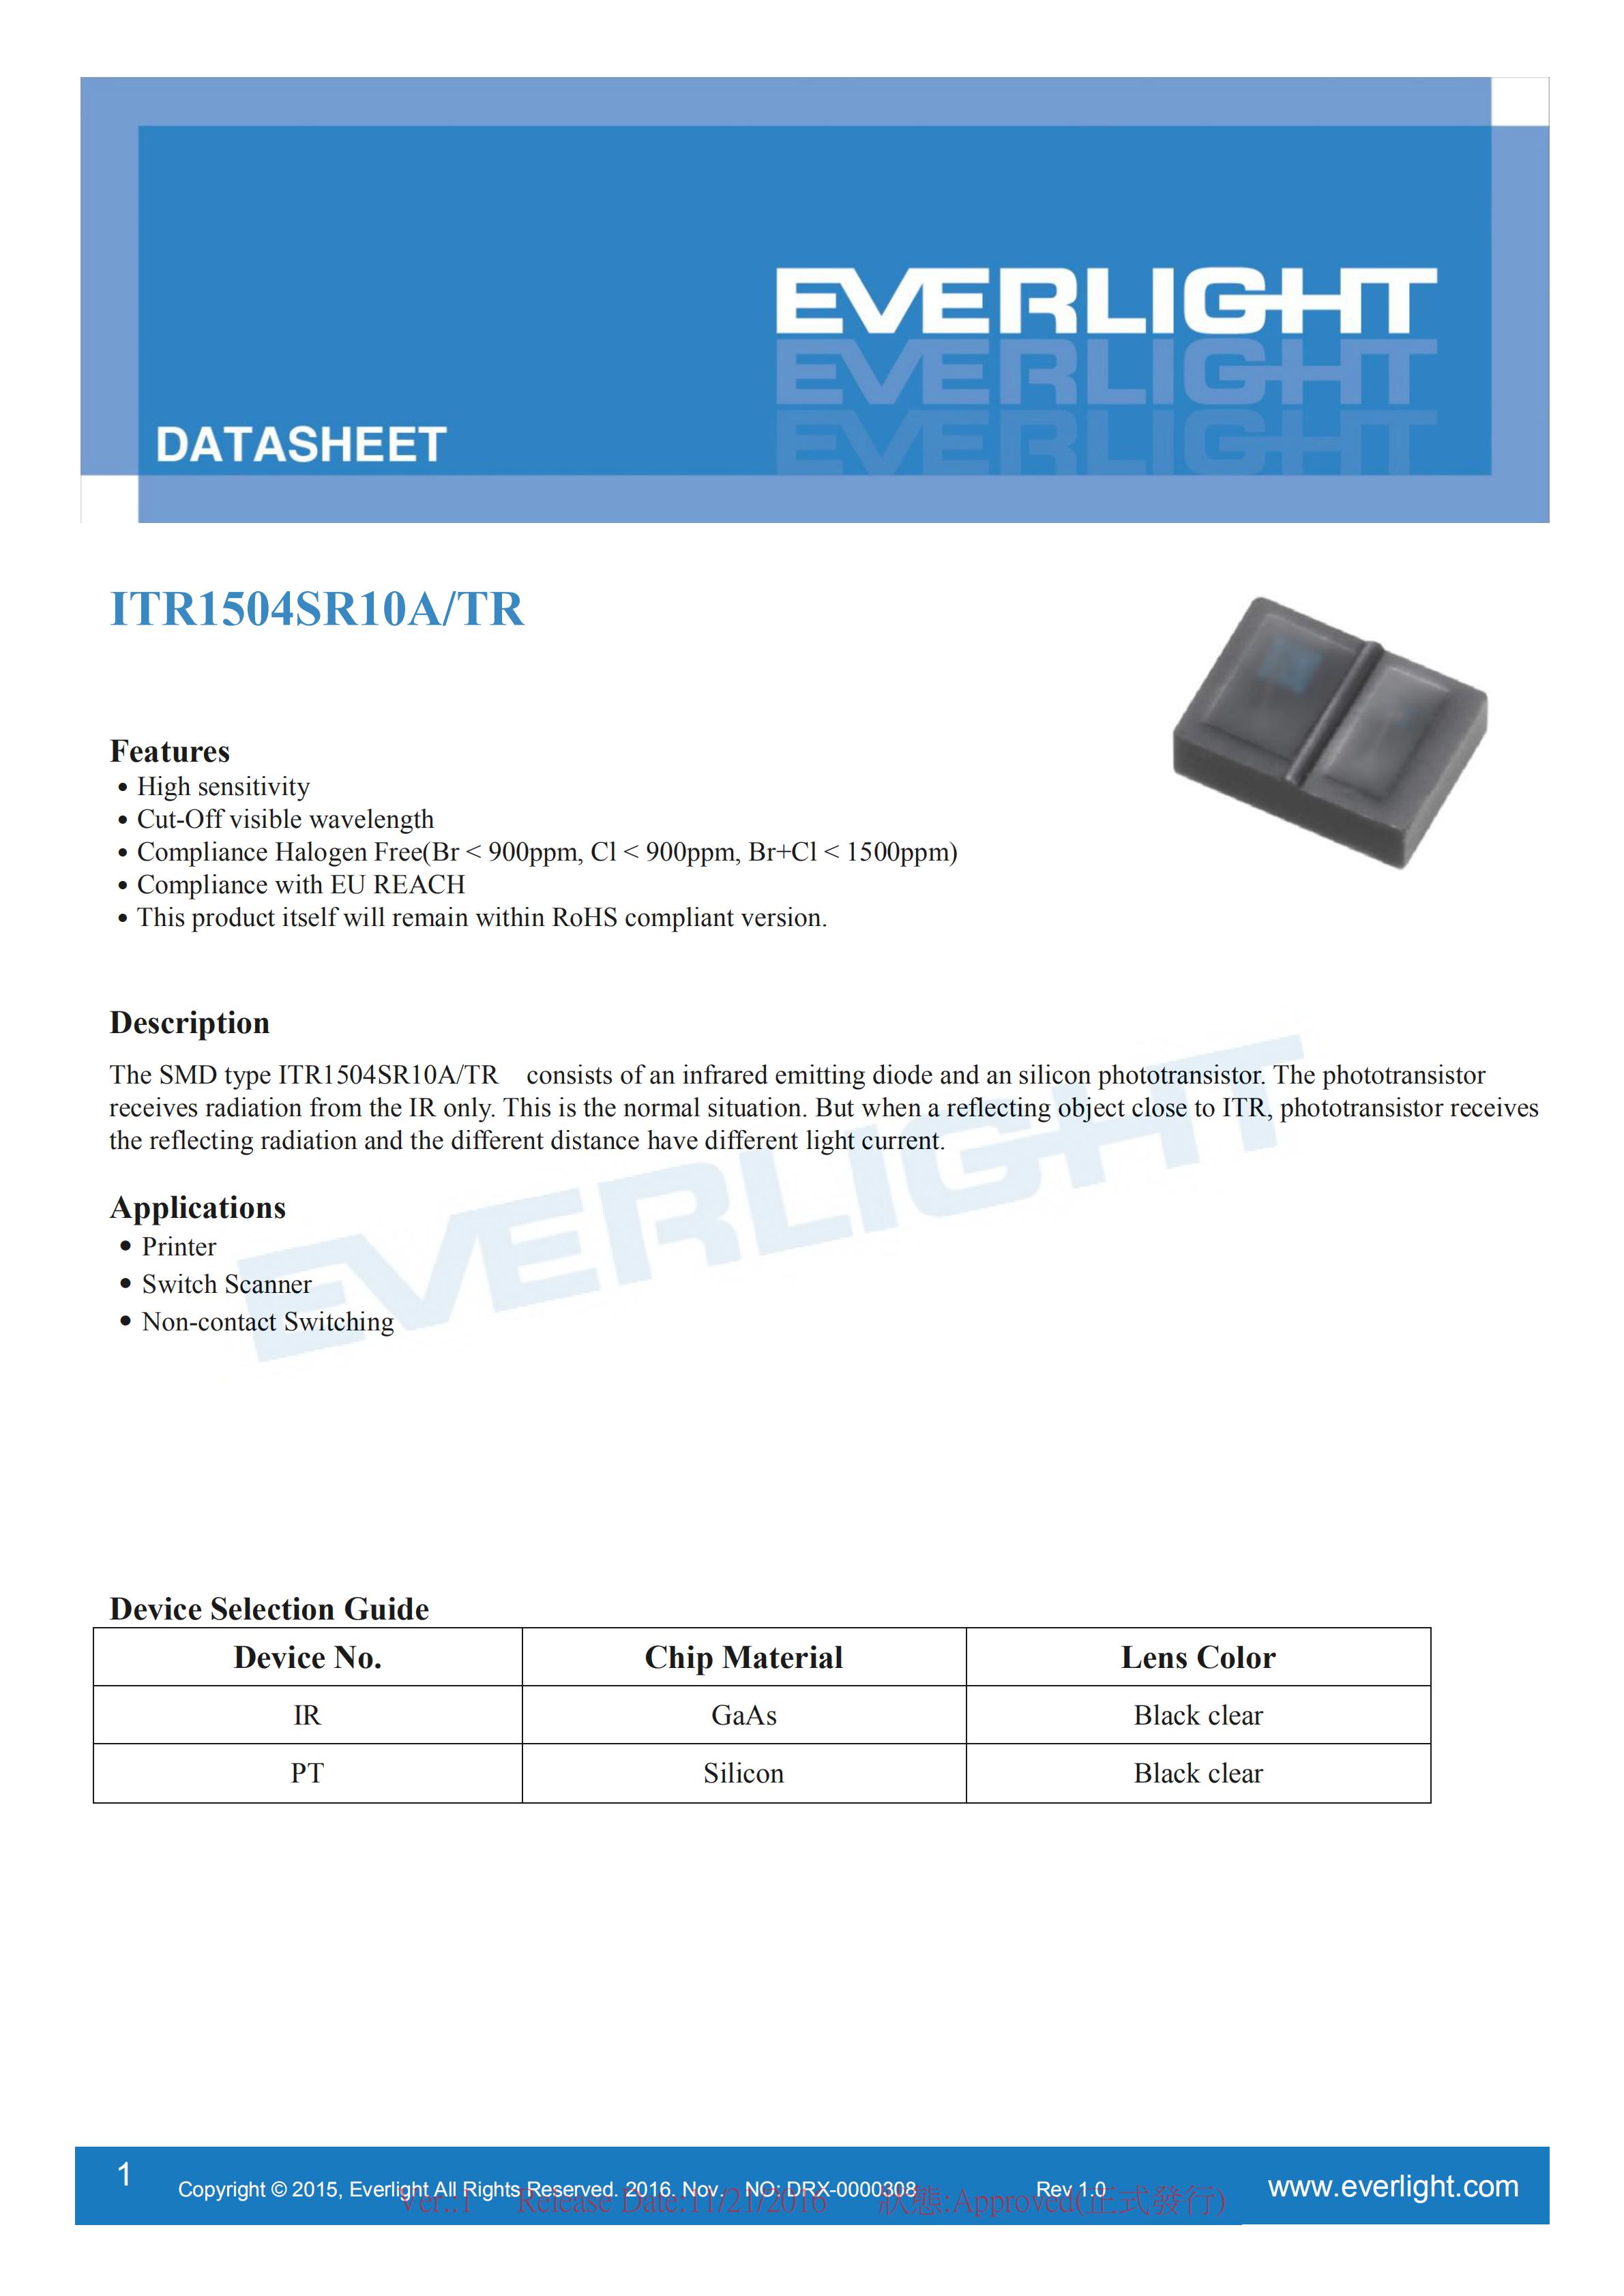 EVERLIGHT Optical Switch ITR1504SR10A/TR Opto Interrupter Datasheet